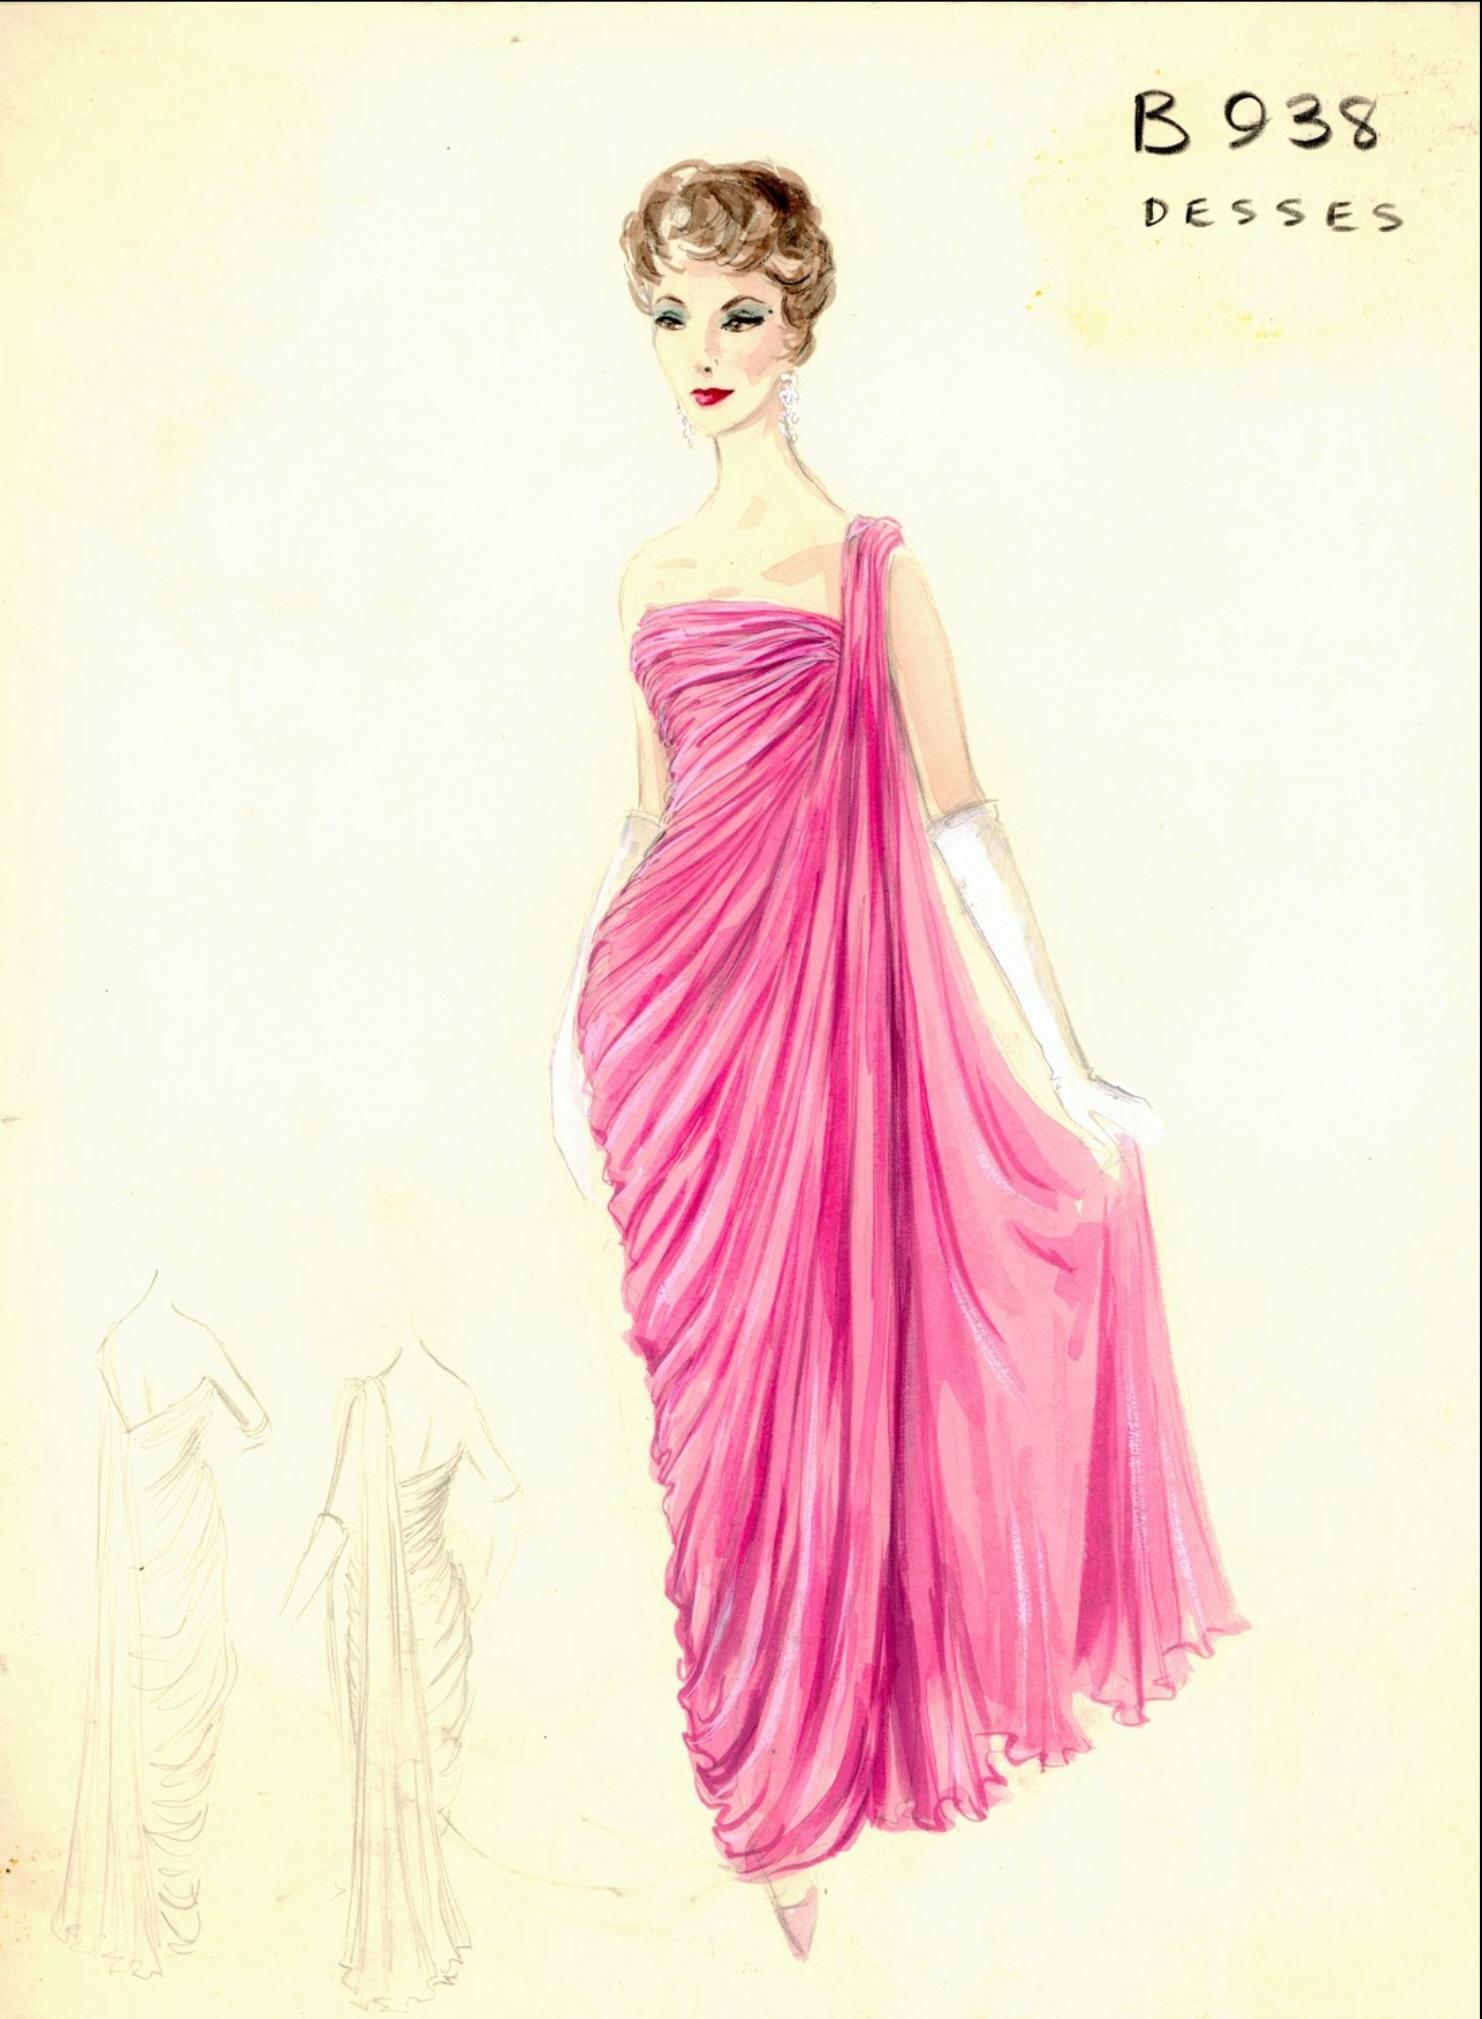 Une robe de déesse en soie-chiffon ruchée rose pâle attribuée par Jean Dessès, datant de sa collection printemps-été 1958, est absolument époustouflante et bien documentée. Cette robe incroyable a été vendue chez Gandini, qui était un détaillant de